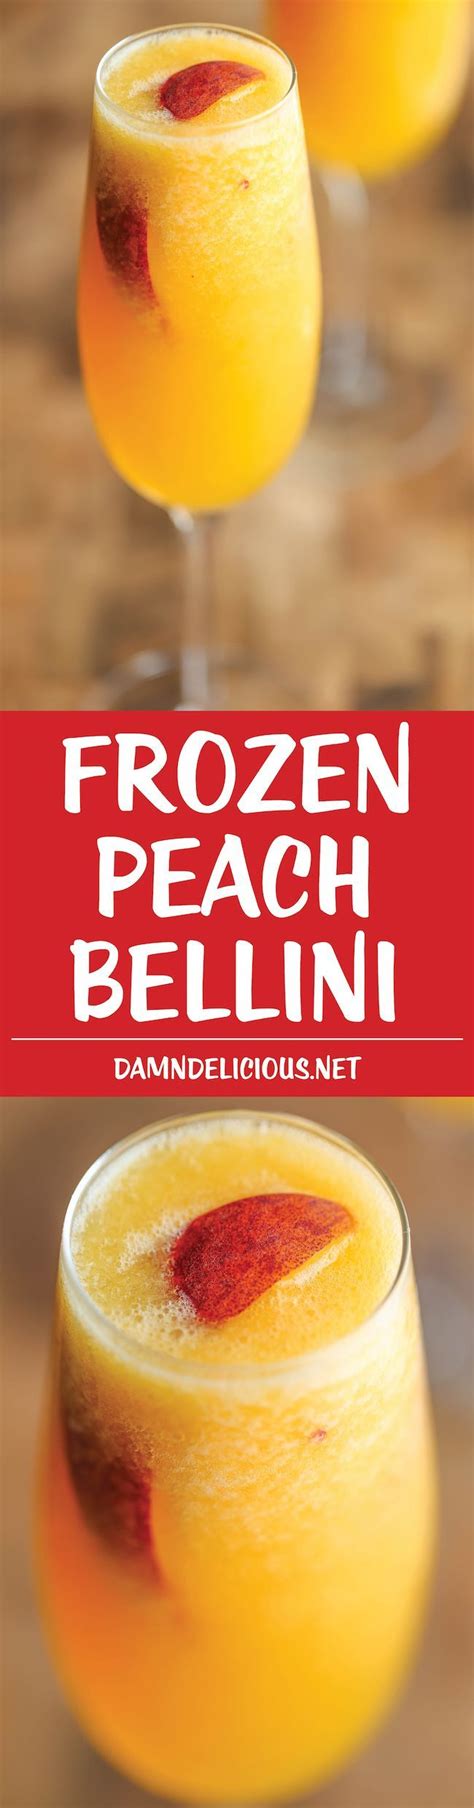 Frozen Peach Bellini Recipe Tomato Seeds Frozen And